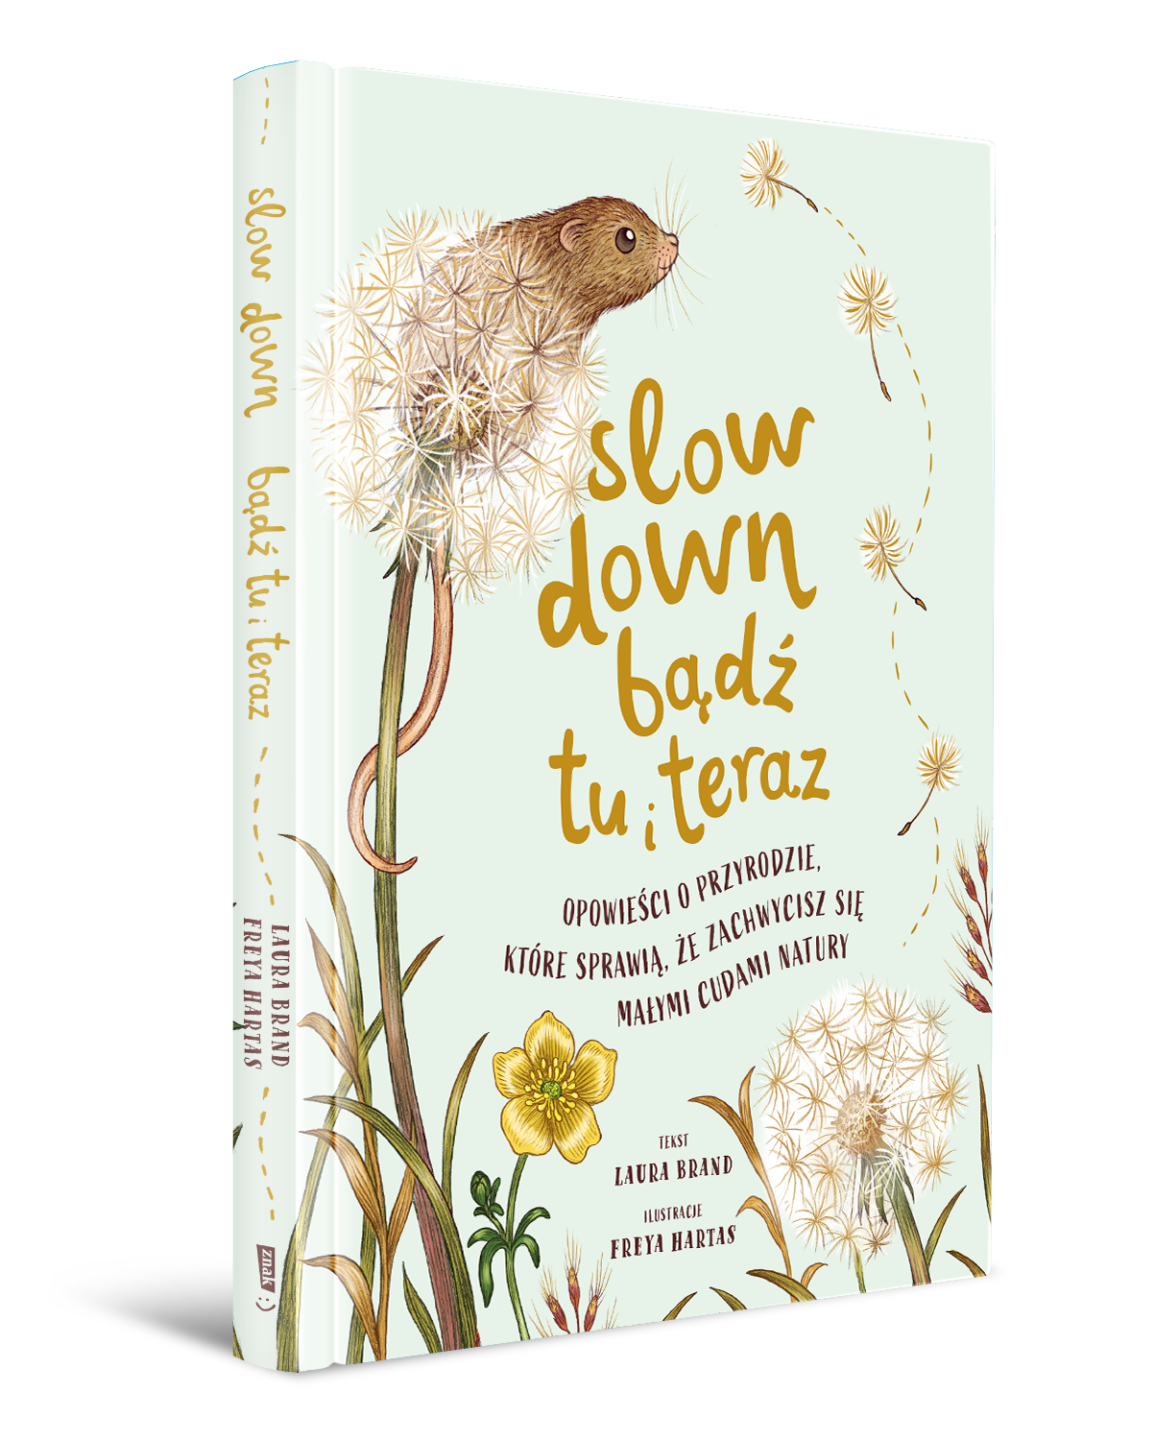 Okładka książki: Slow Down. Bądź tu i teraz. Opowieści o przyrodzie, które sprawią, że zachwycisz się małymi cudami natury